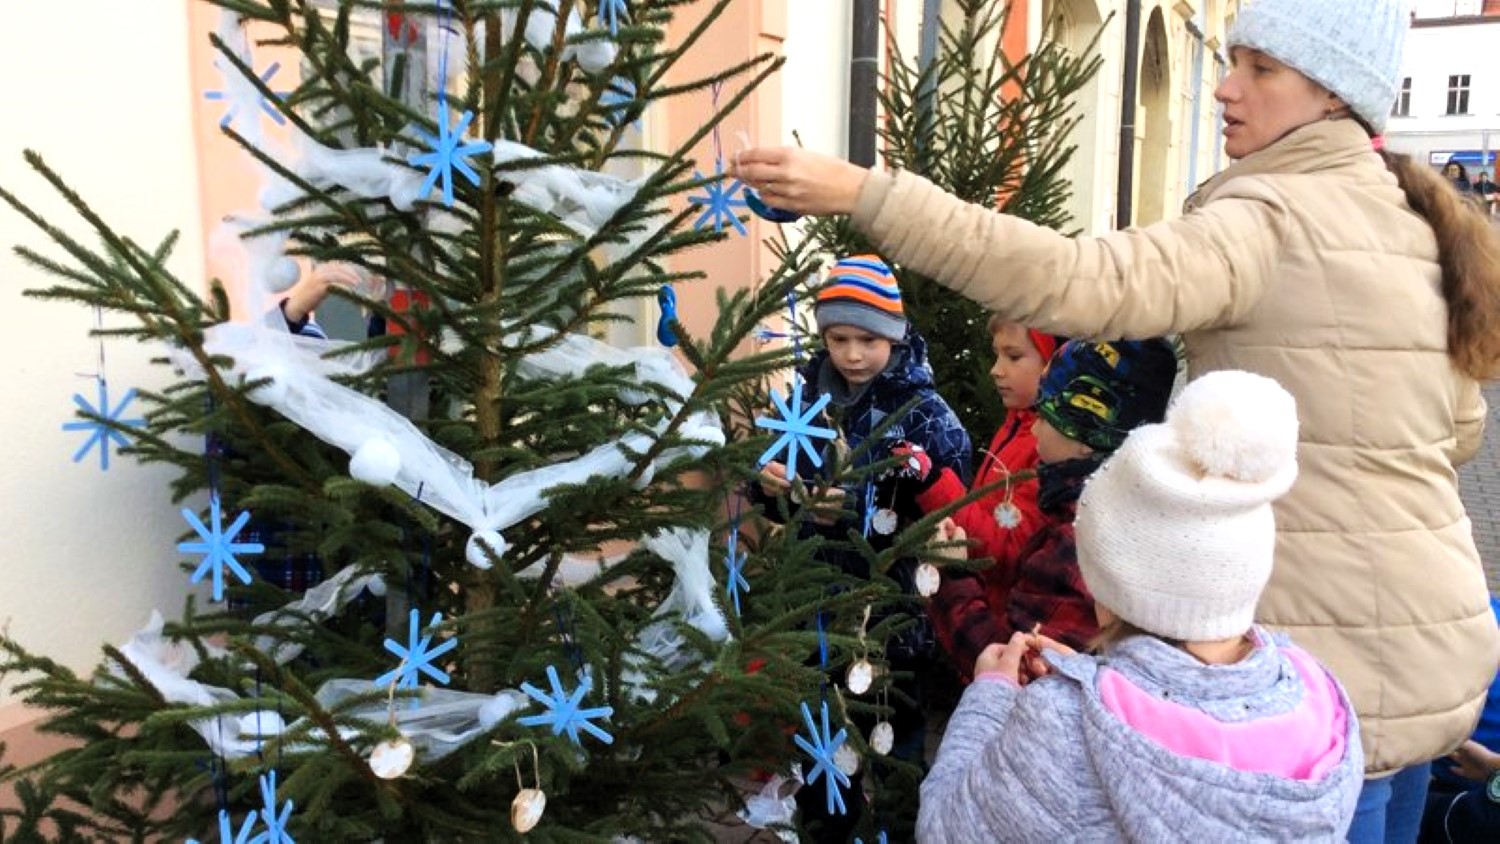 V Rakovníku se soutěží „O nejkrásněji nazdobený vánoční stromeček“